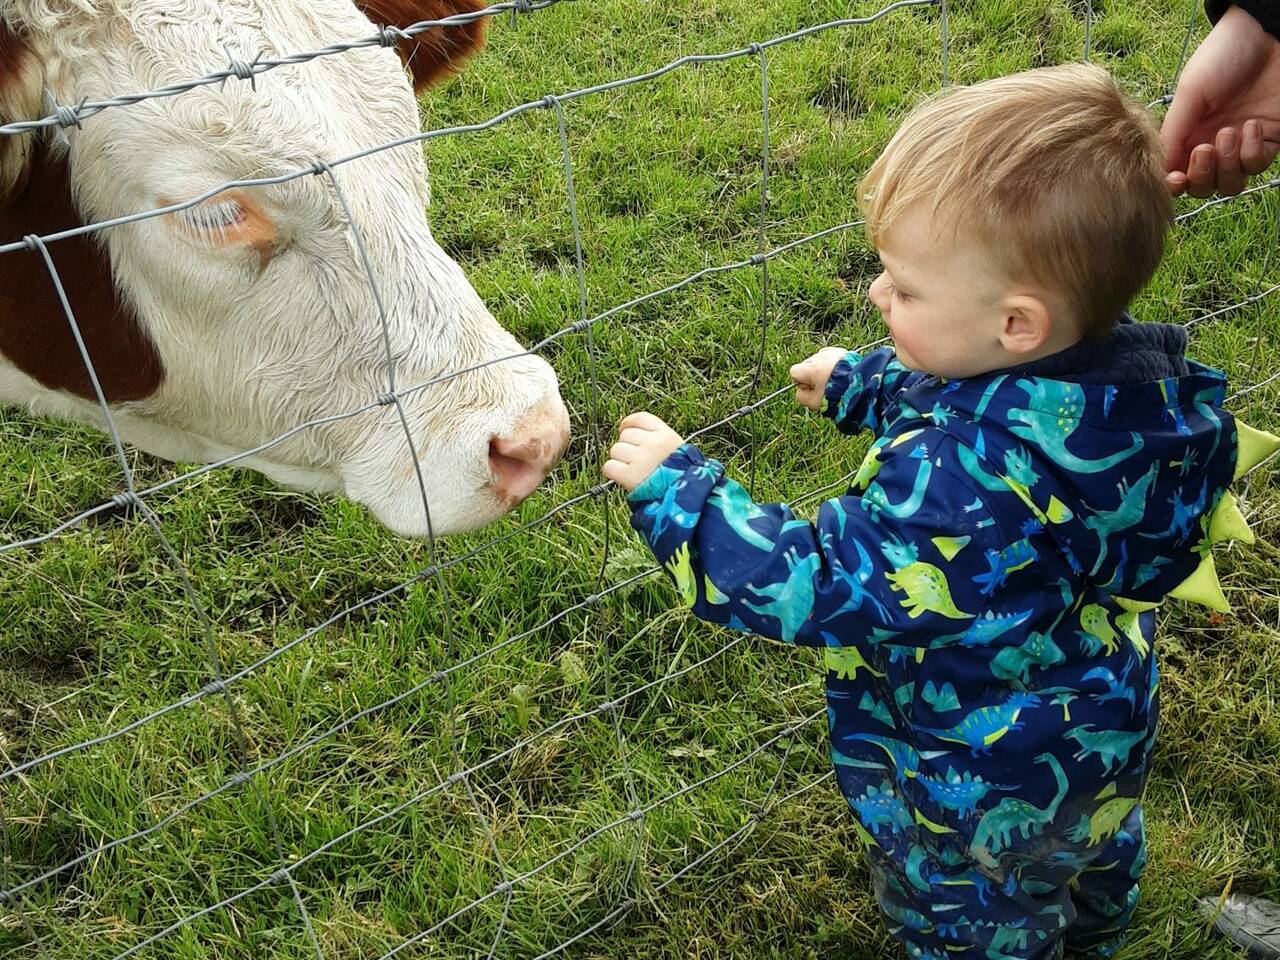 Meeting cows